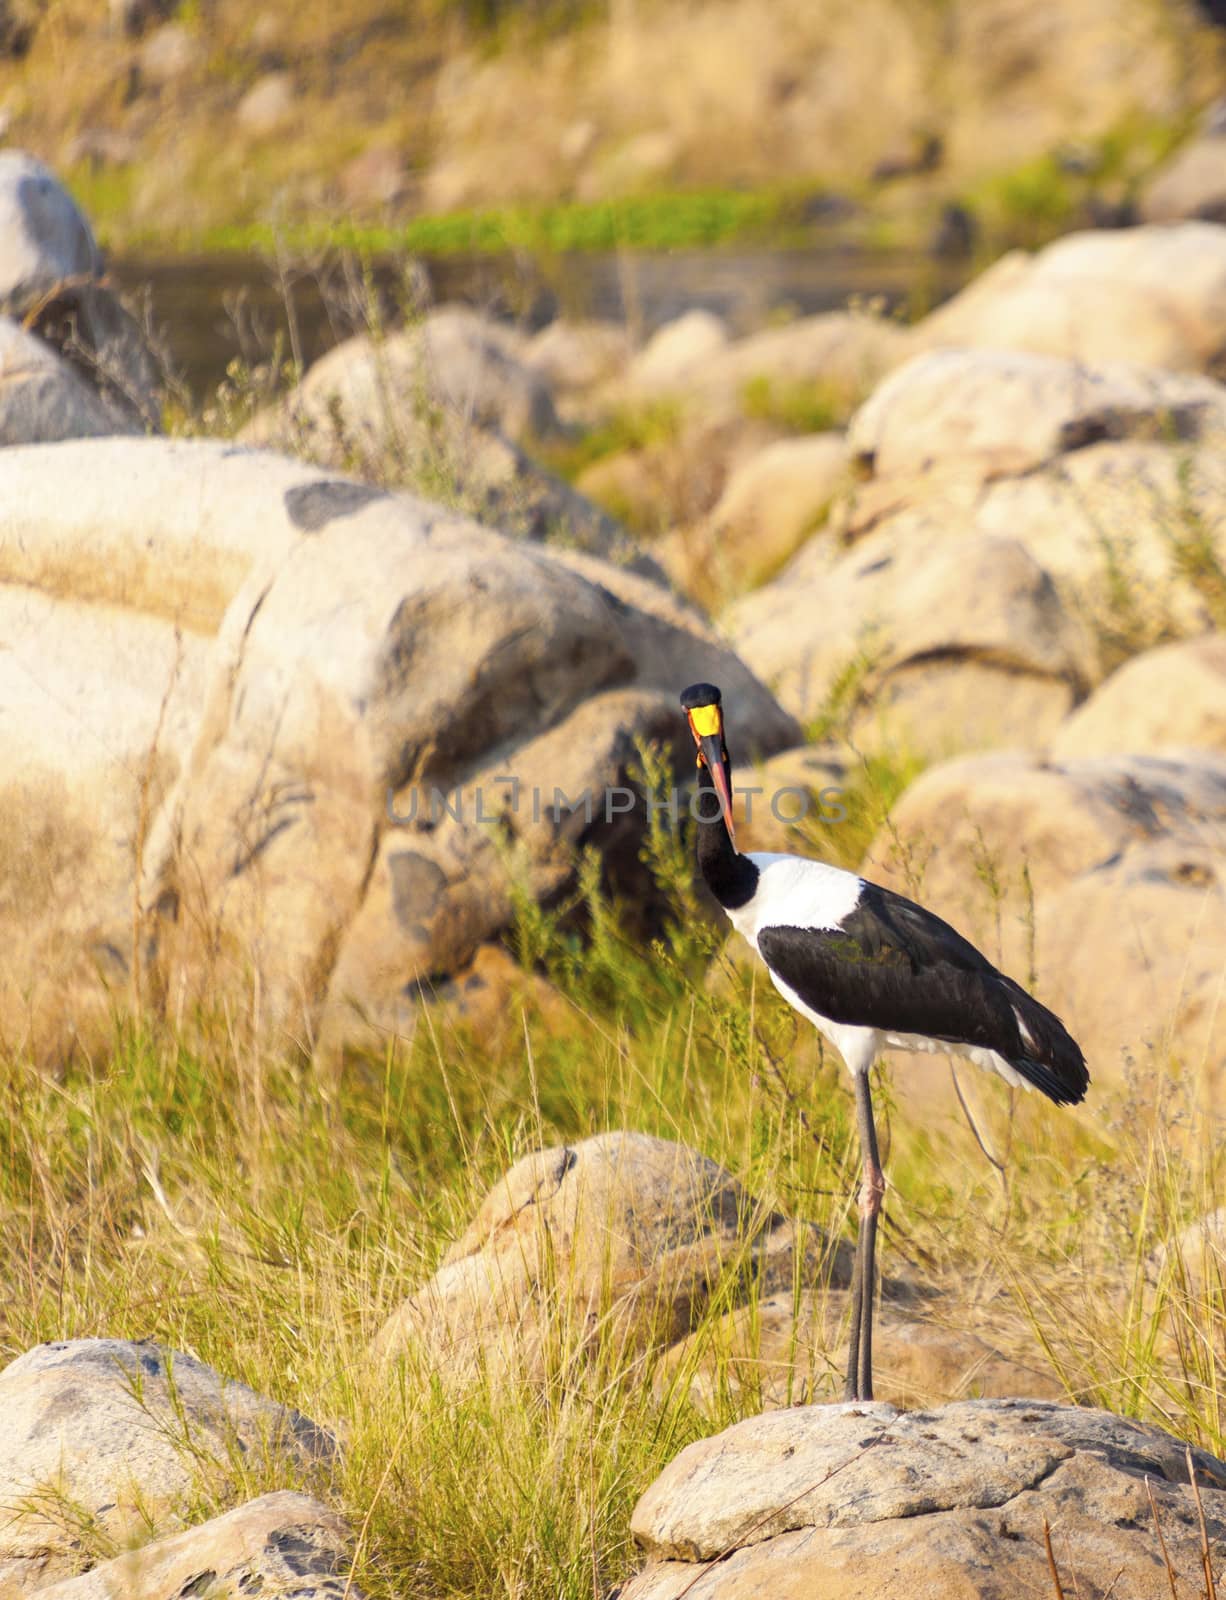 Saddle-billed stork by Imagecom